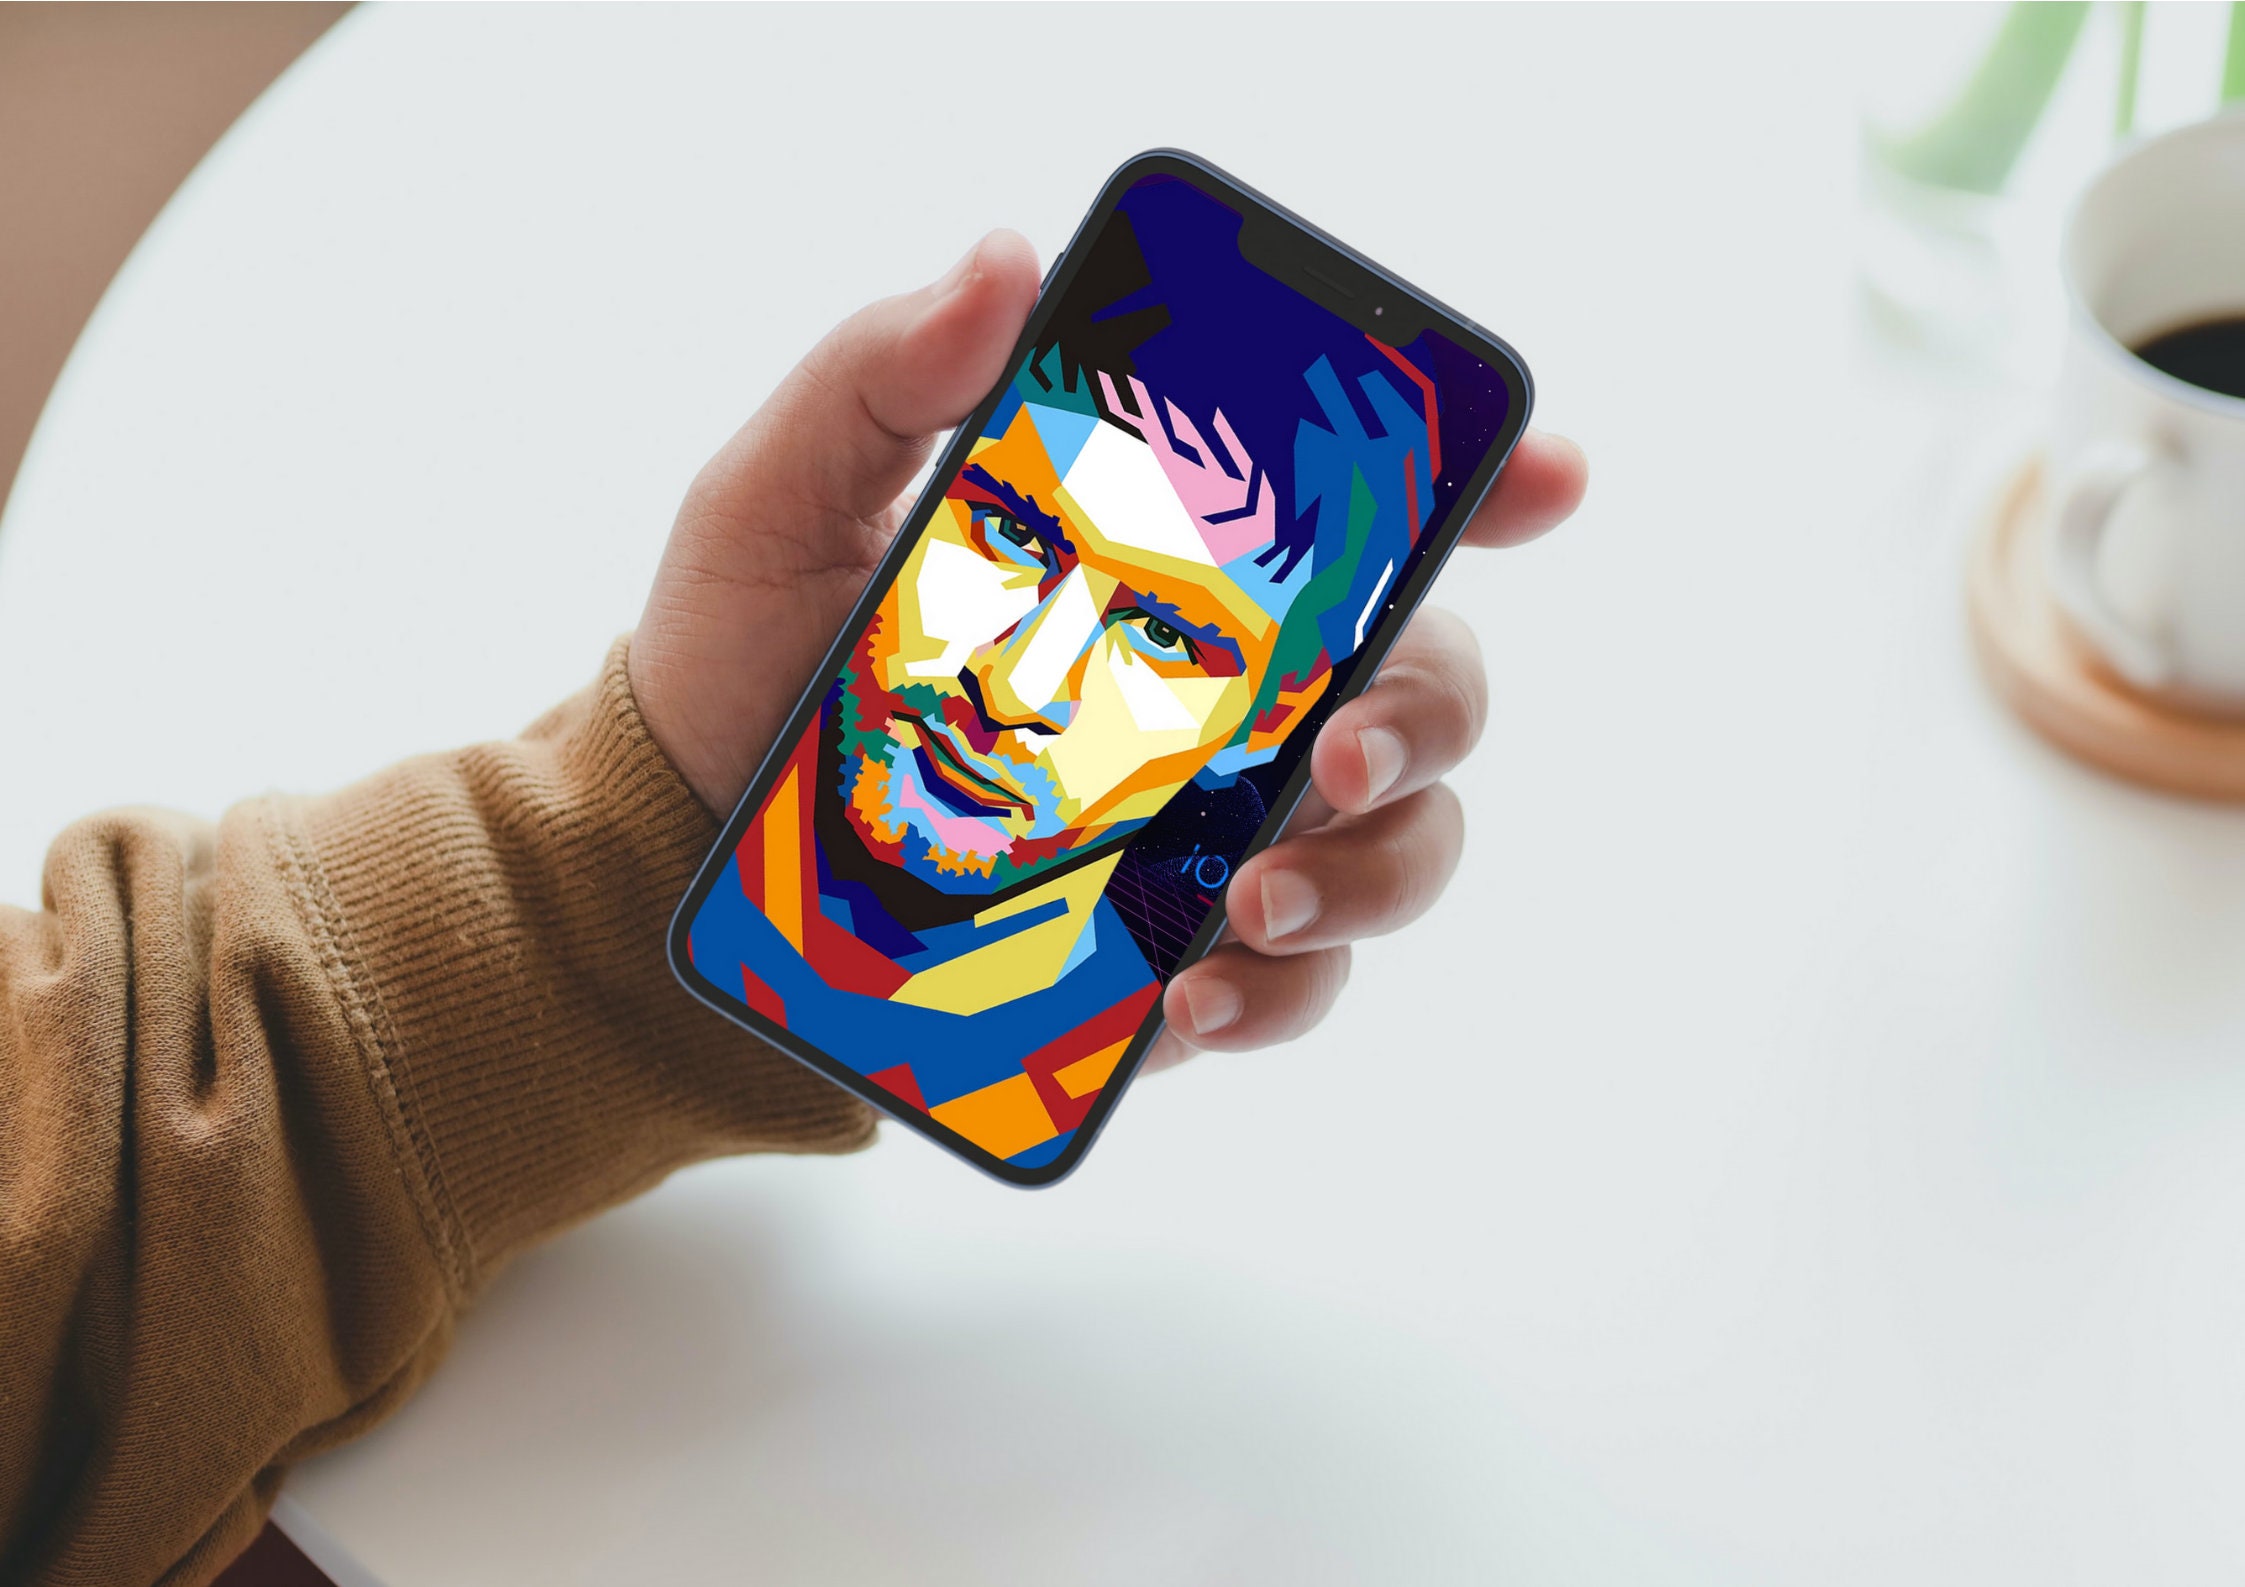 Tận hưởng sự tuyệt vời của Leo Messi trên điện thoại của bạn với hình nền Messi wallpaper phone. Những bức ảnh đẹp mắt sẽ không chỉ làm bạn rộng lưới mà còn khiến cho bạn cảm thấy bối rối với những kĩ năng bóng đá đỉnh cao của siêu sao này.